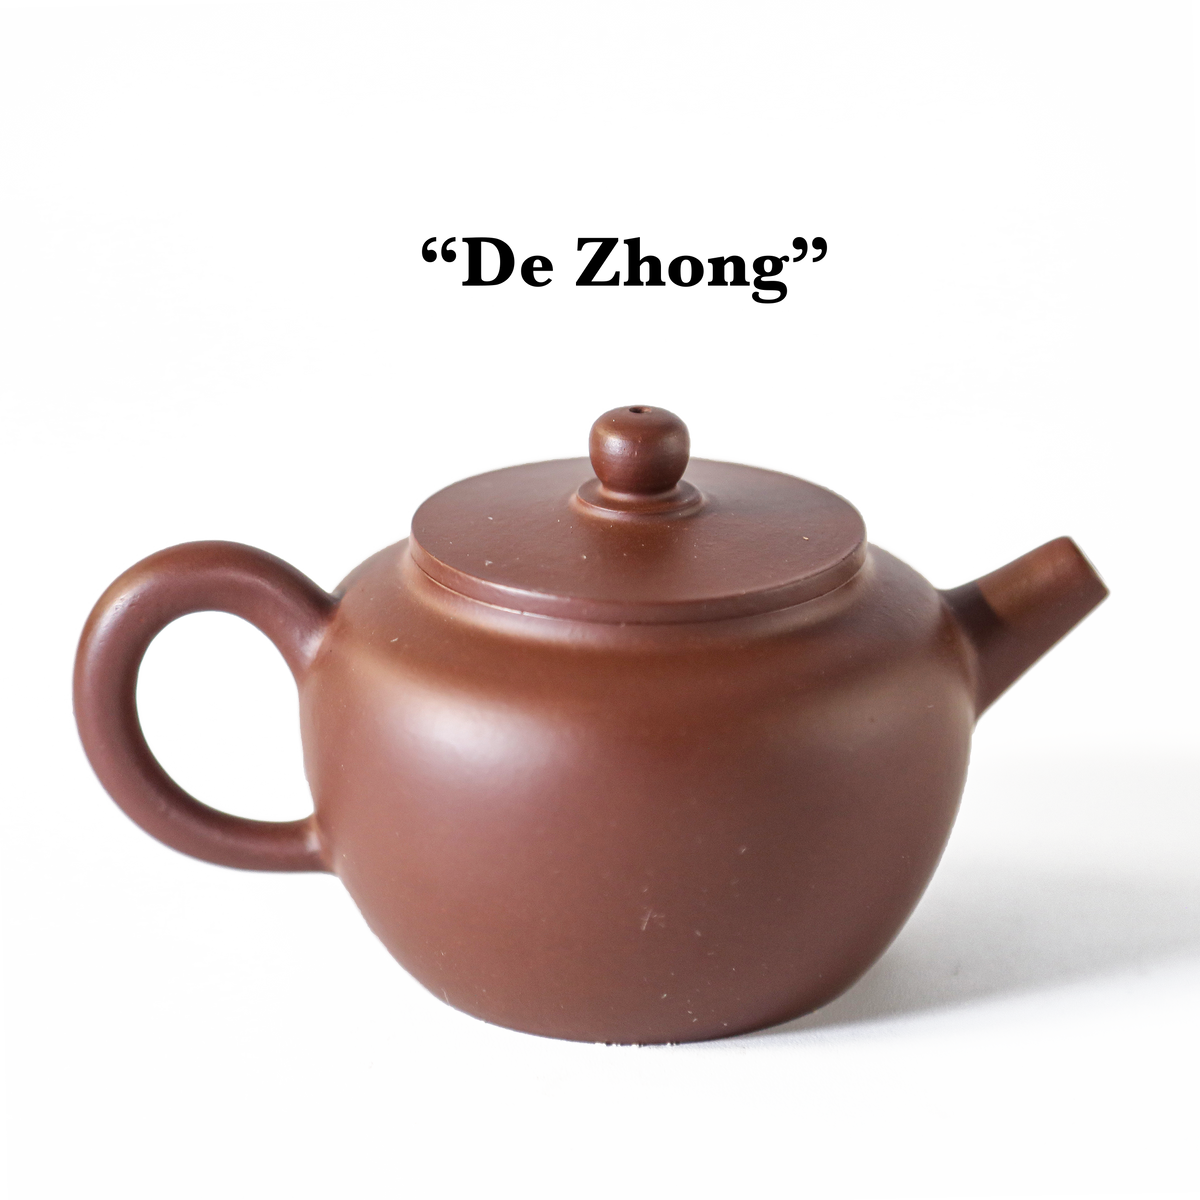 Yixing Tea Pot